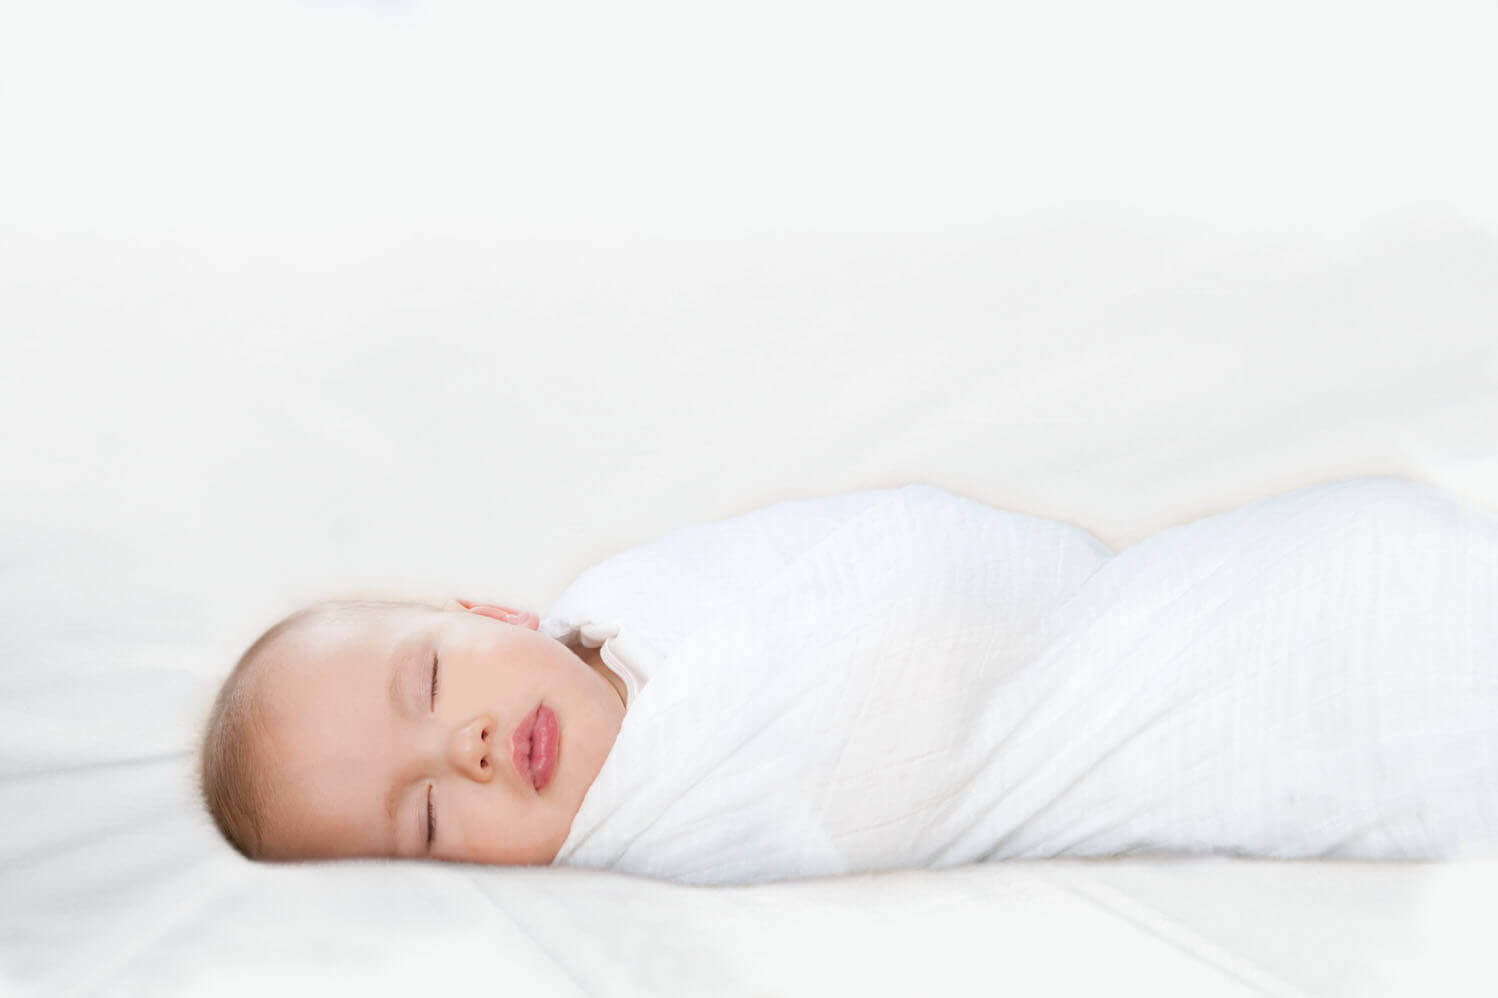 שק שינה לתינוקות - מקום בטוח ומחמם